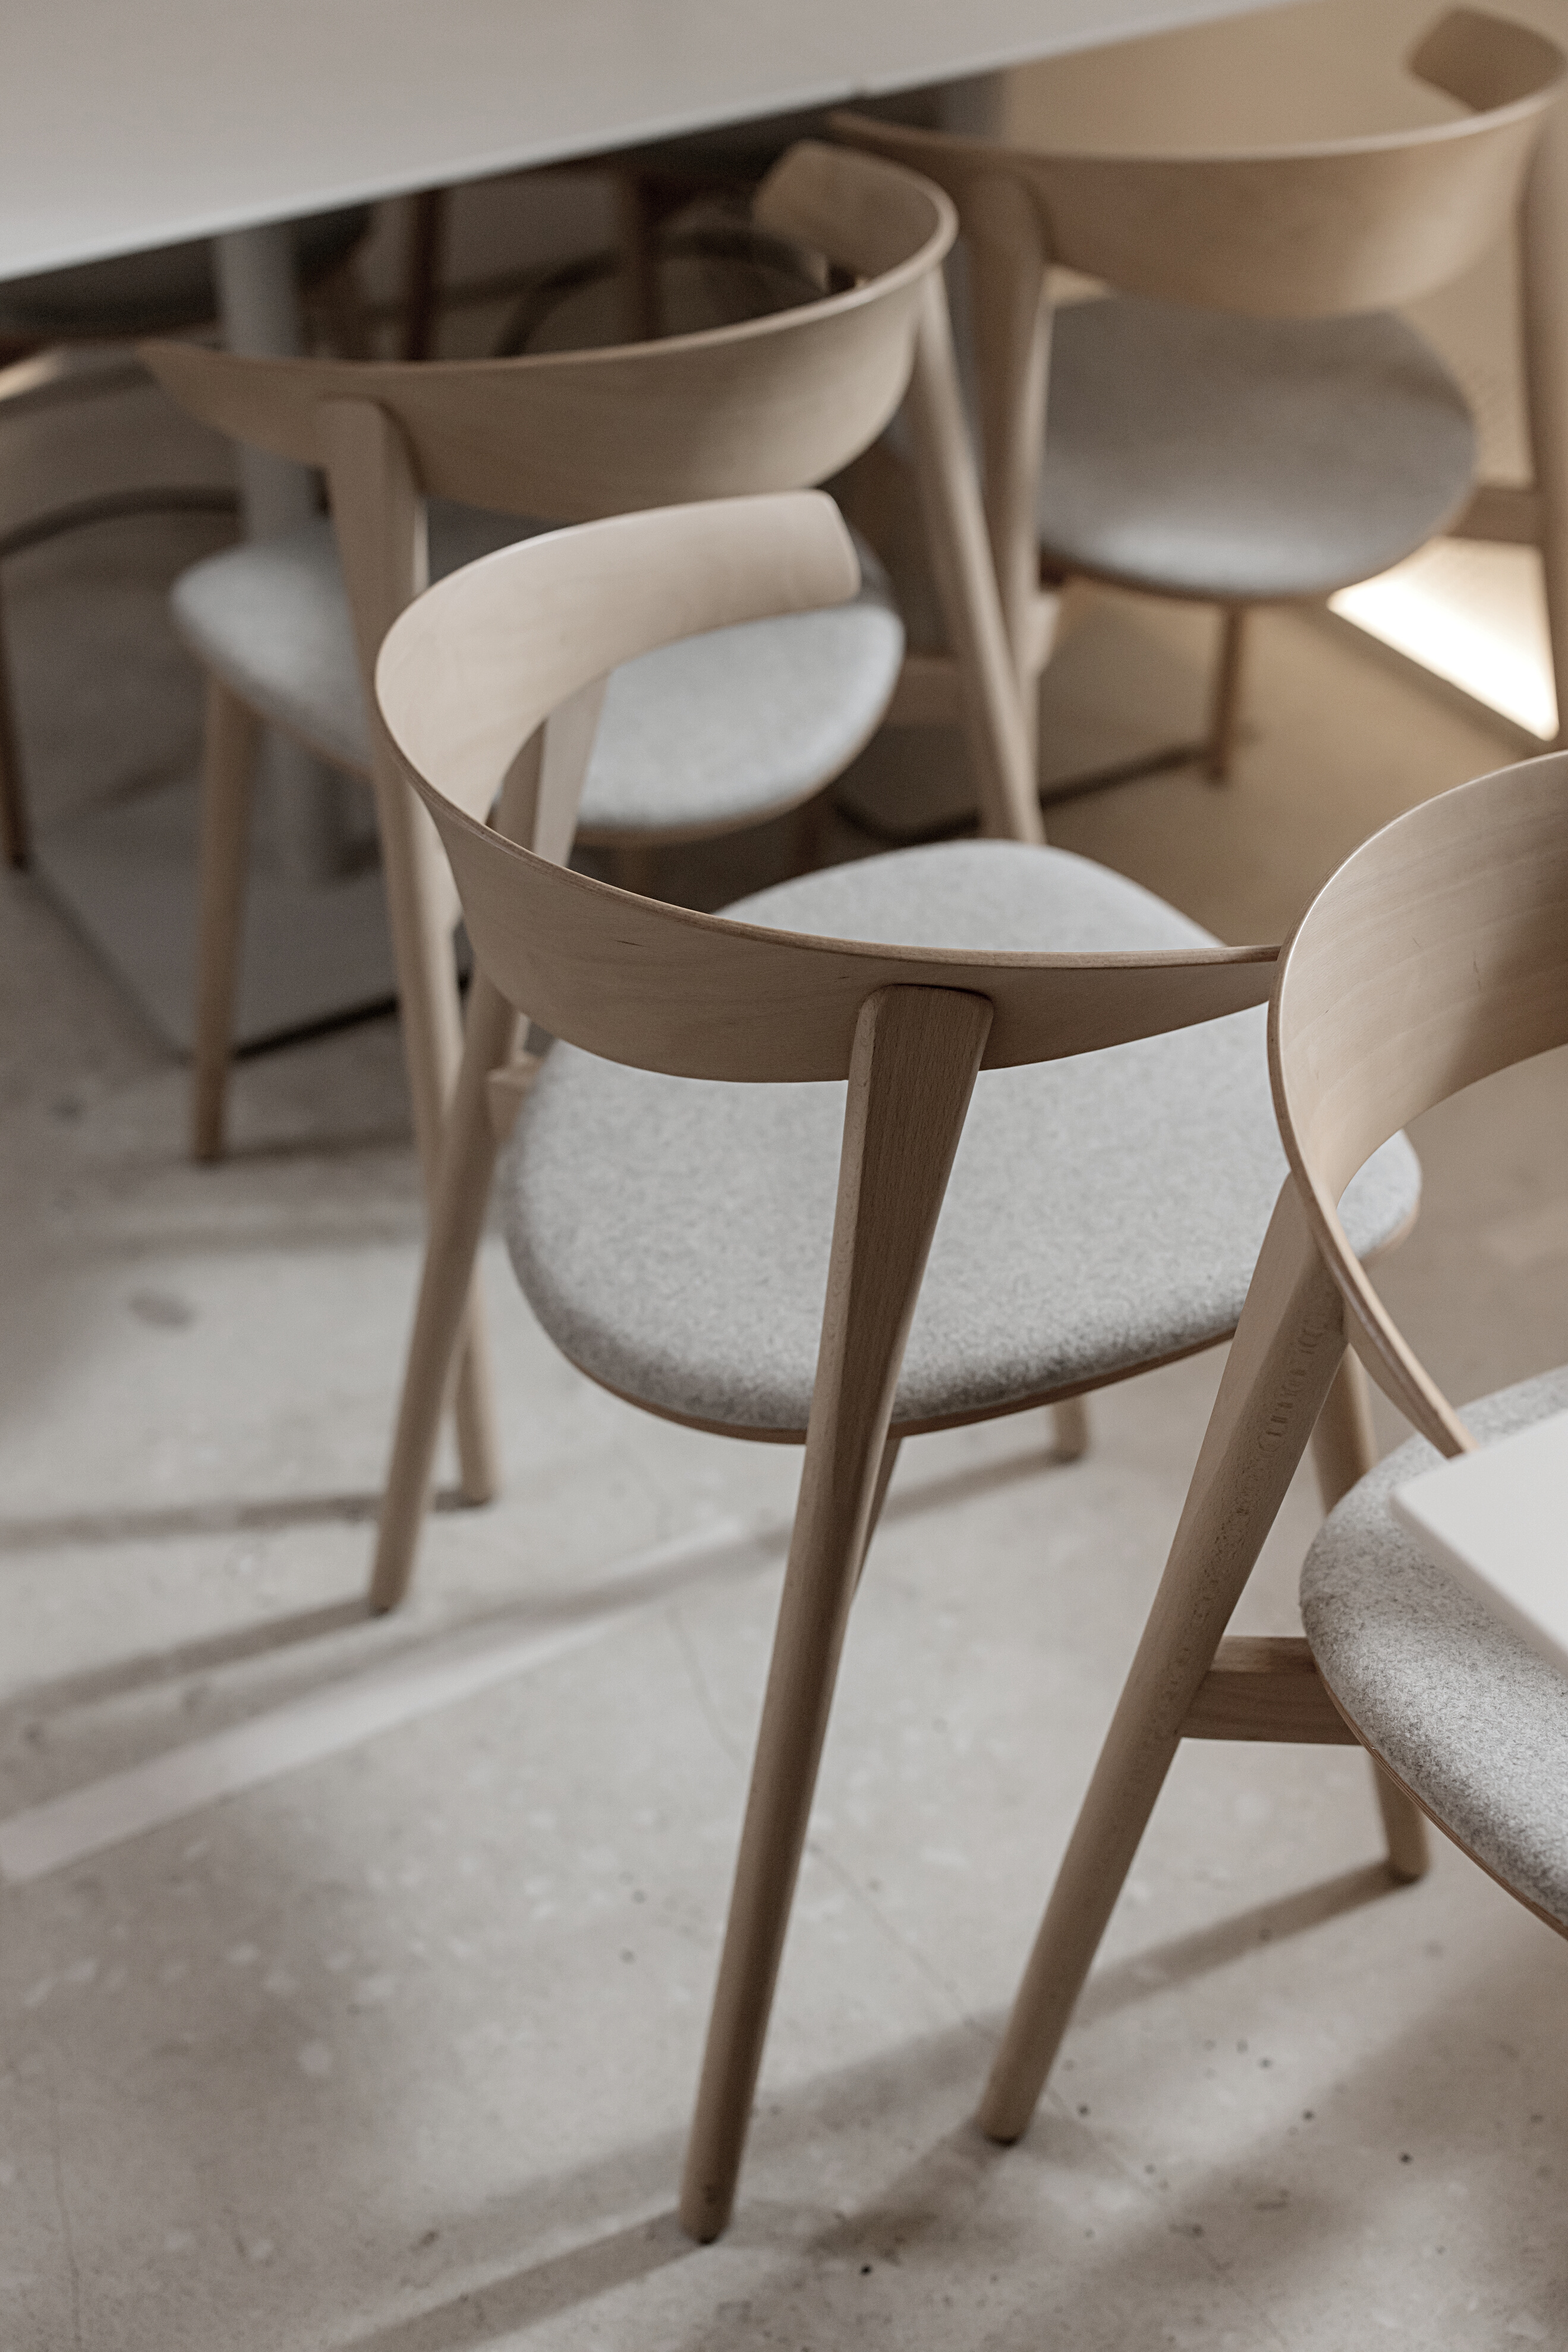 White Wooden Chair on White Floor Tiles